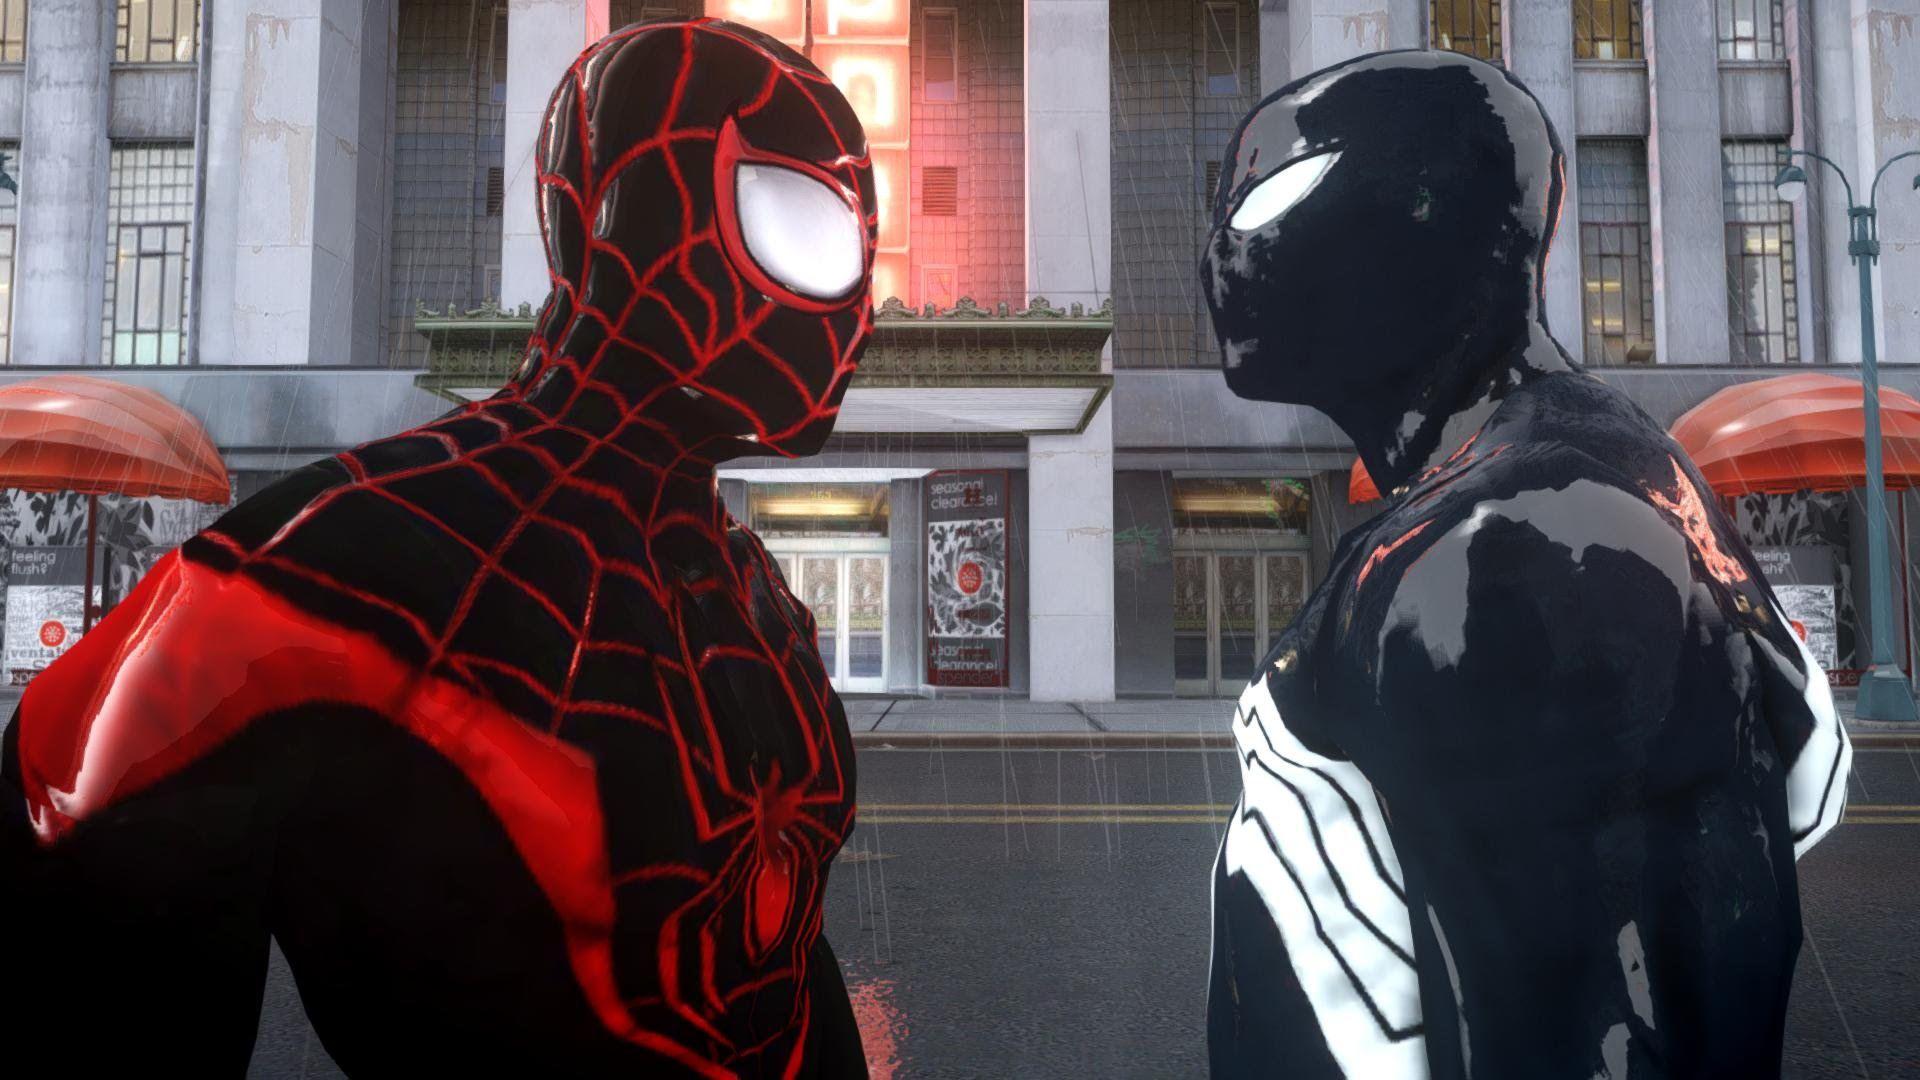 Spiderman (Miles Morales) vs Black Spiderman